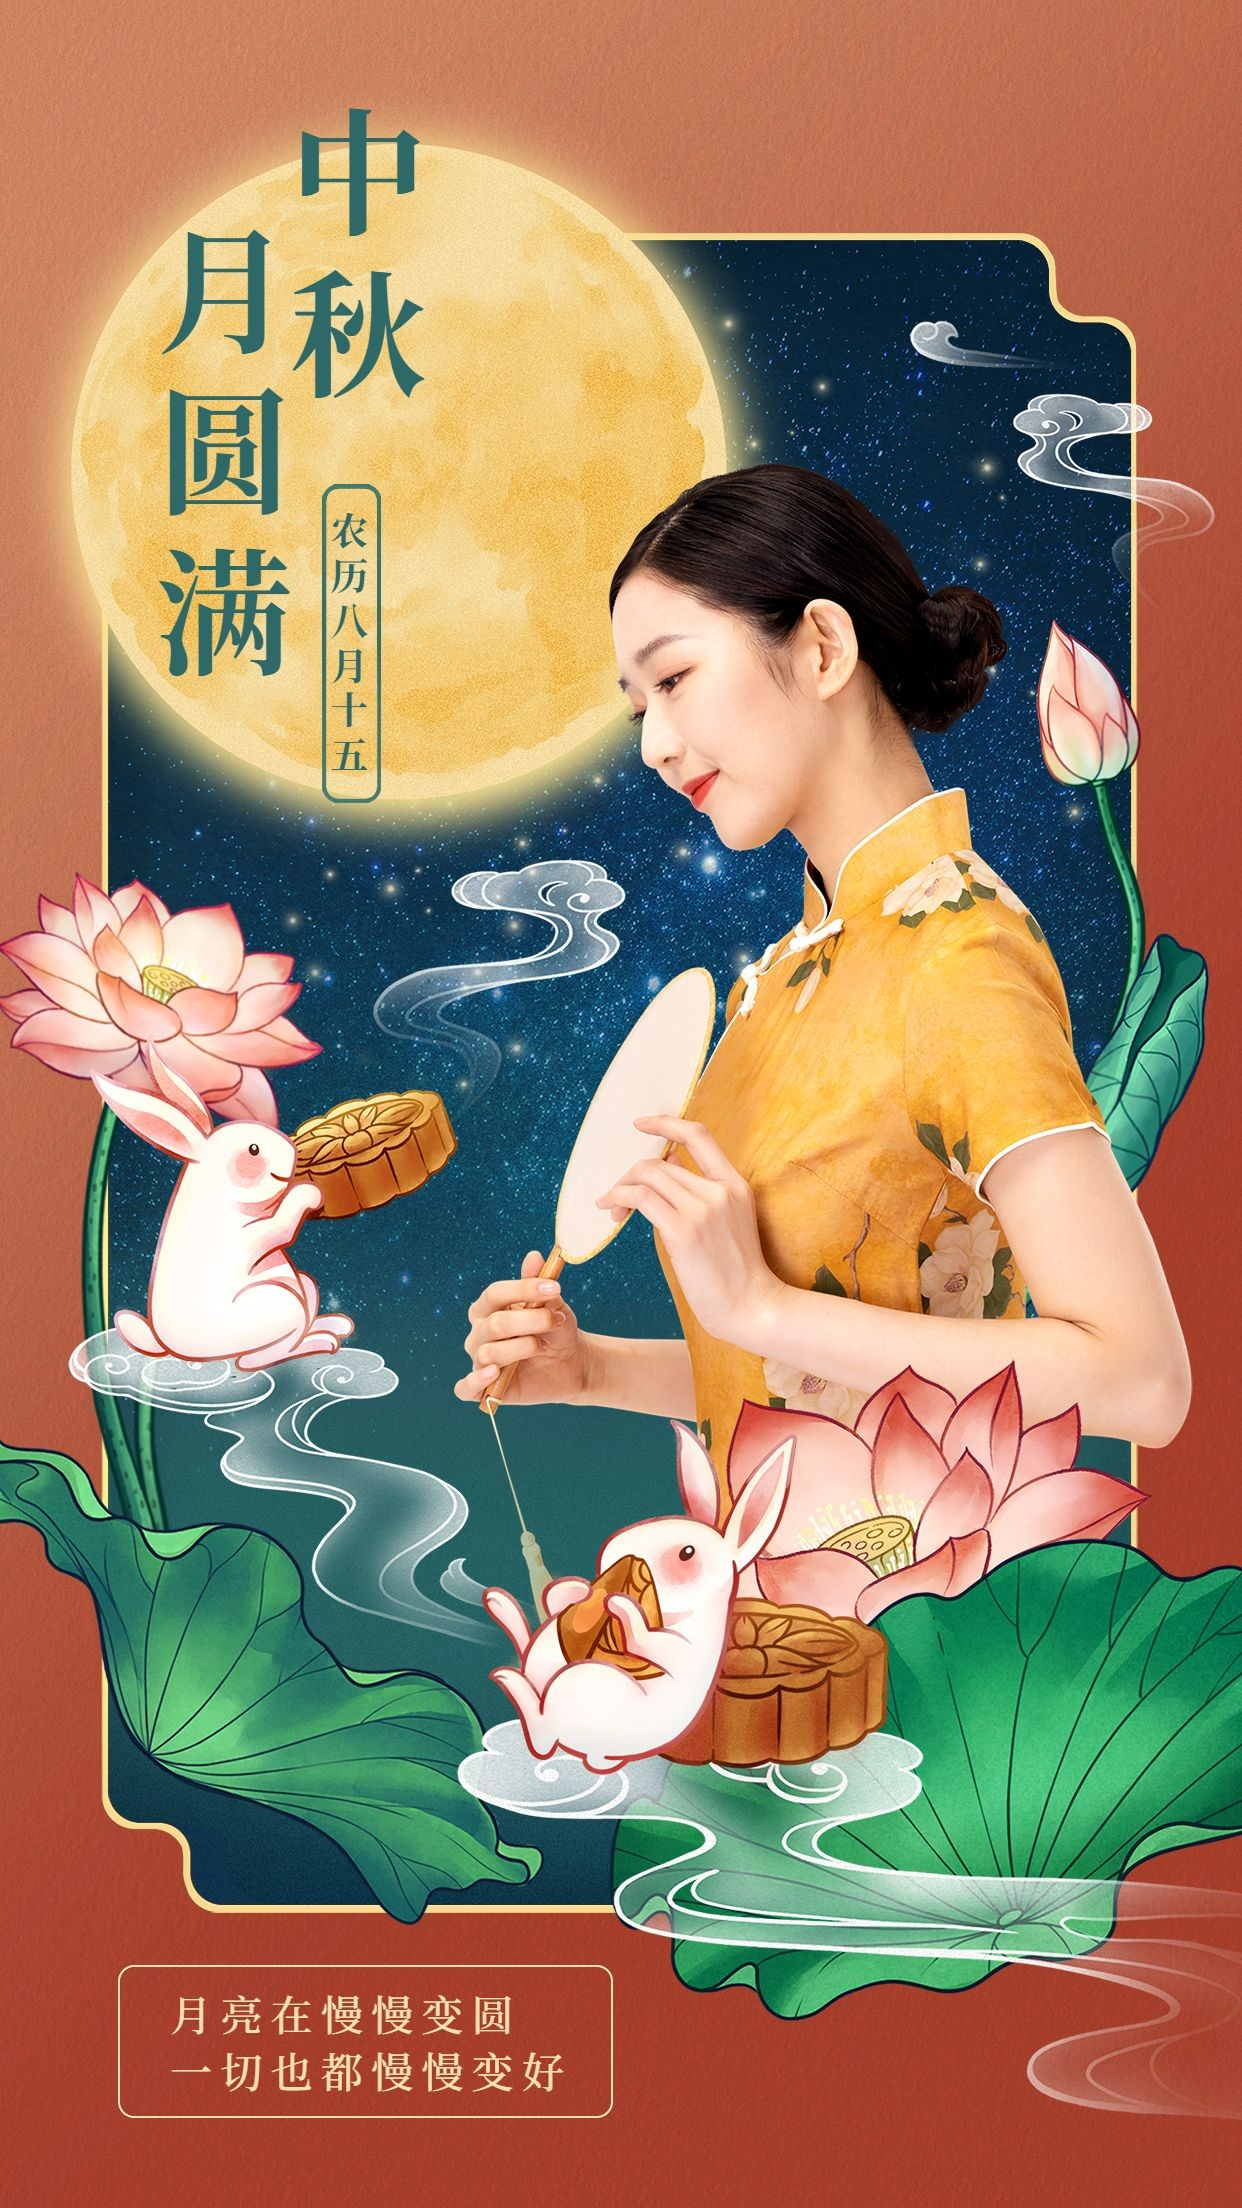 中秋节节日祝福人物晒照中国风手机海报